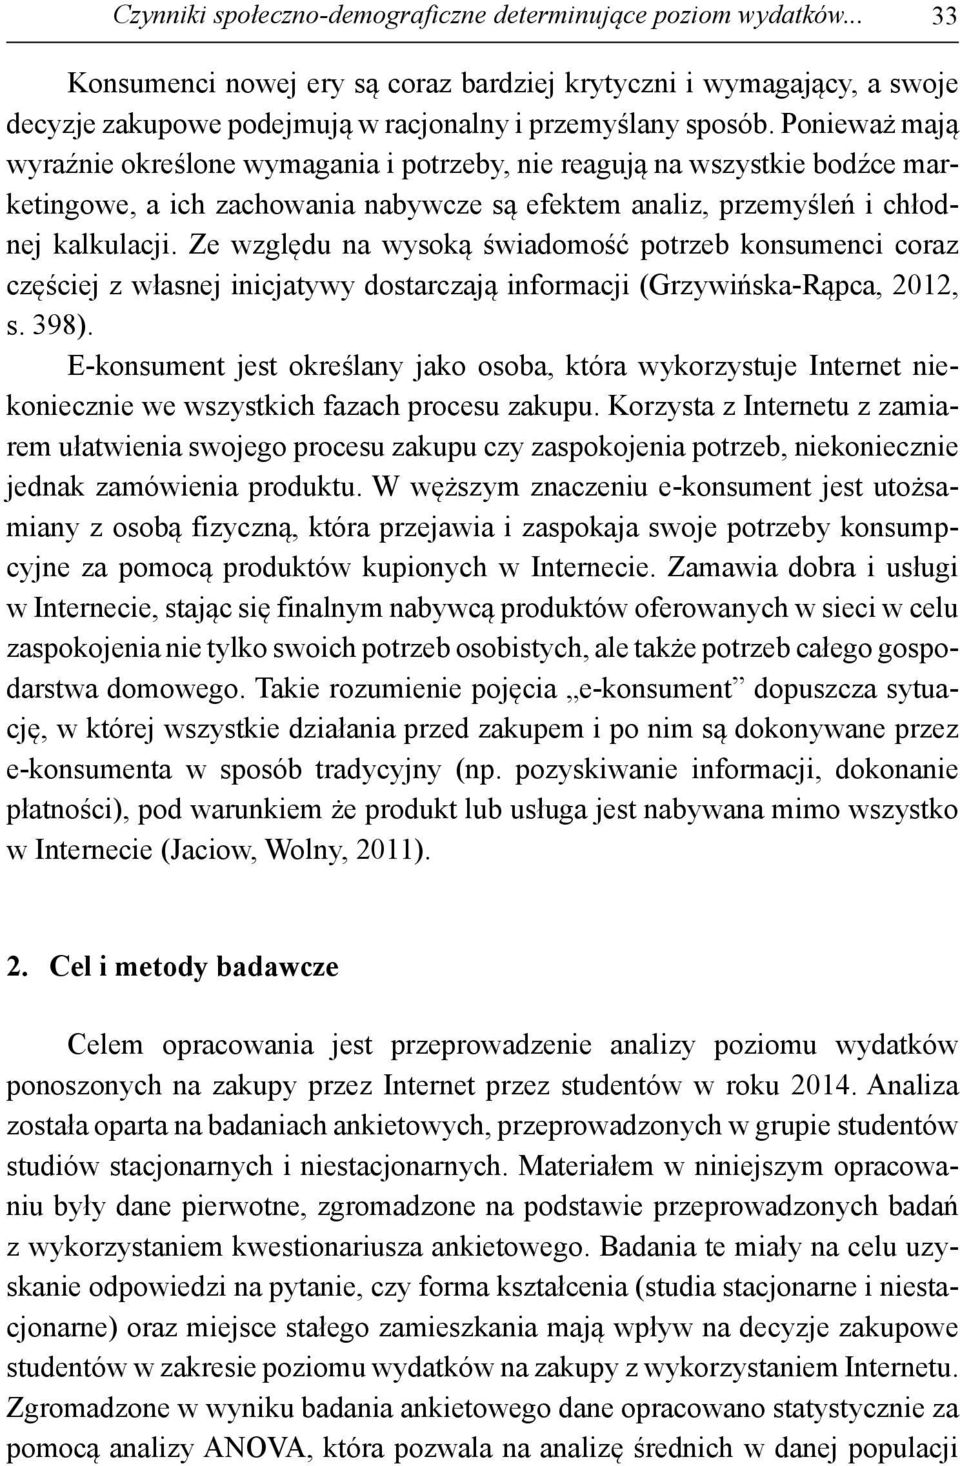 Ze względu na wysoką świadomość potrzeb konsumenci coraz częściej z własnej inicjatywy dostarczają informacji (Grzywińska-Rąpca, 2012, s. 398).